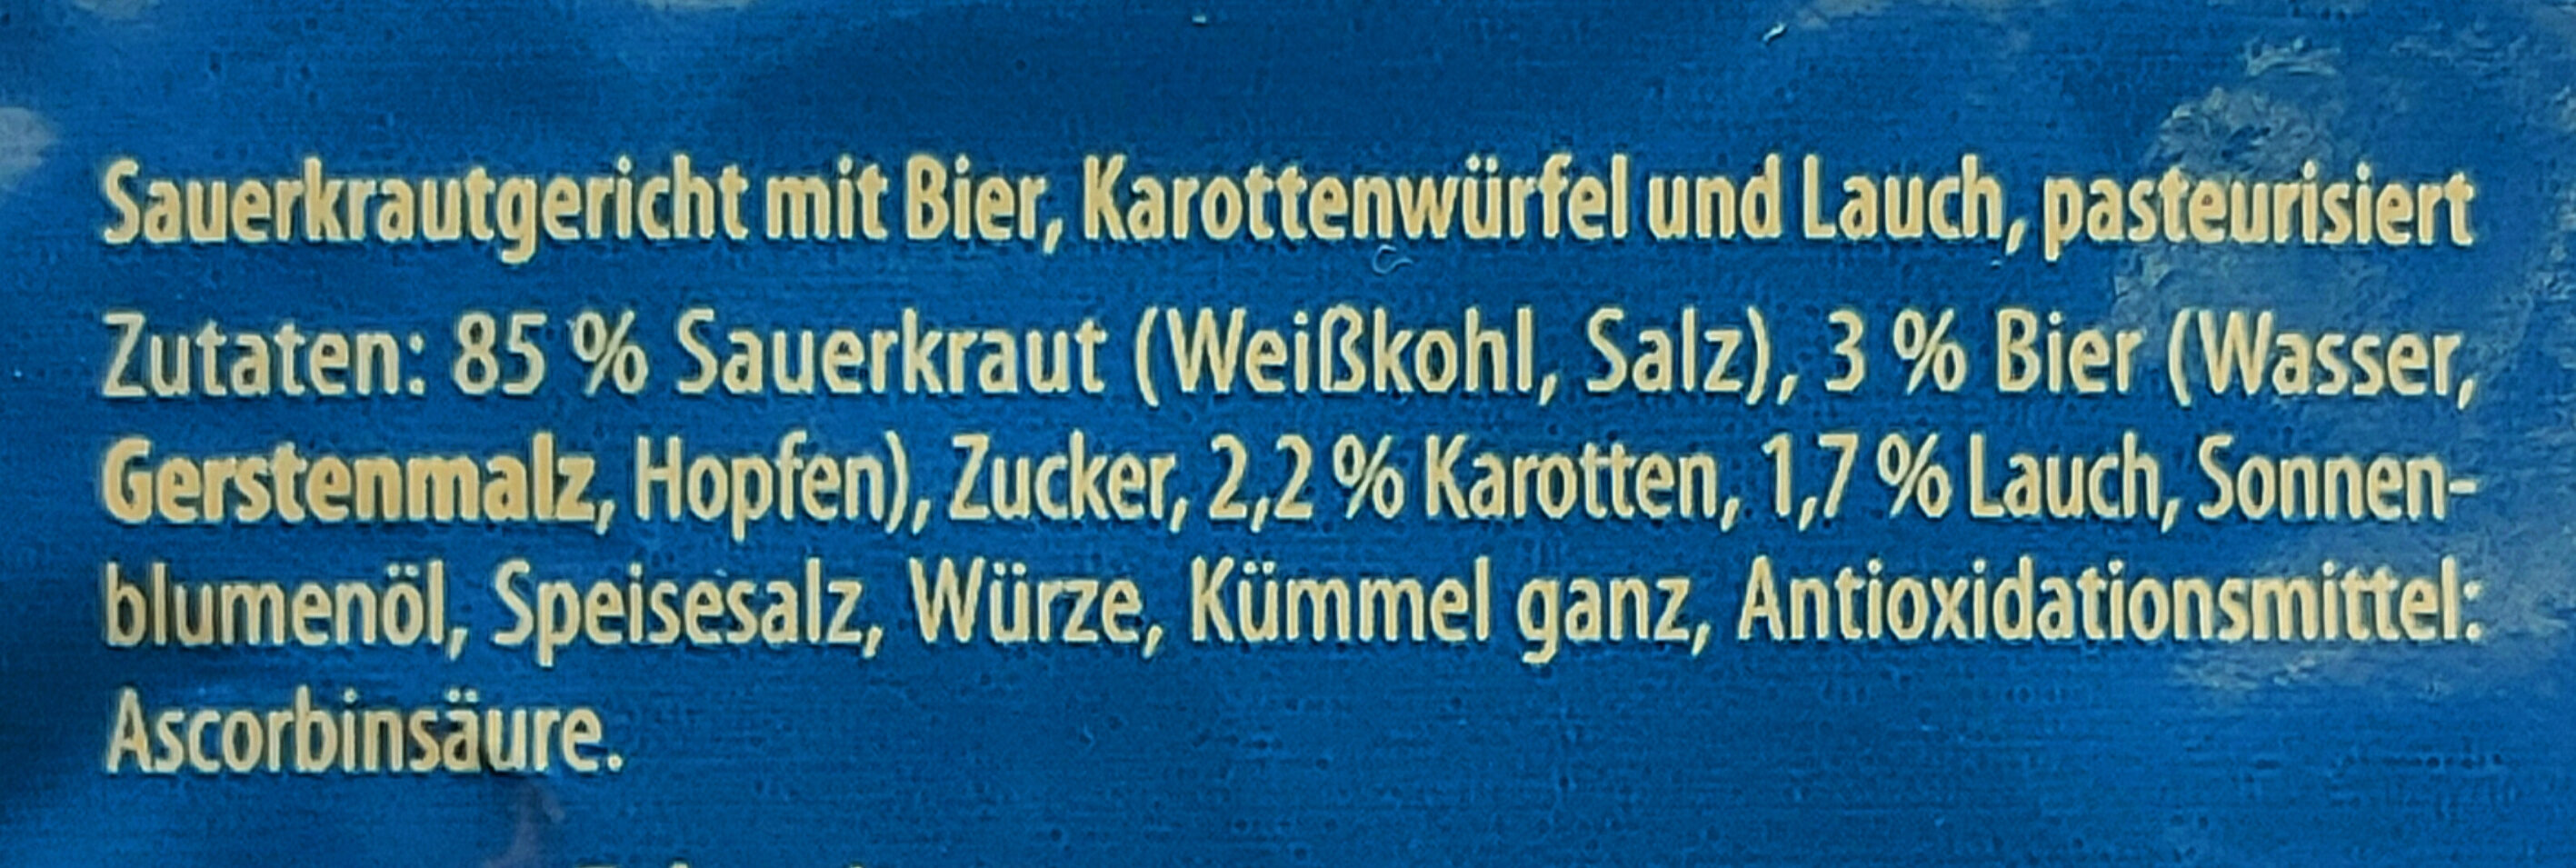 Sauerkraut Bayerische Art - Ingredients - de